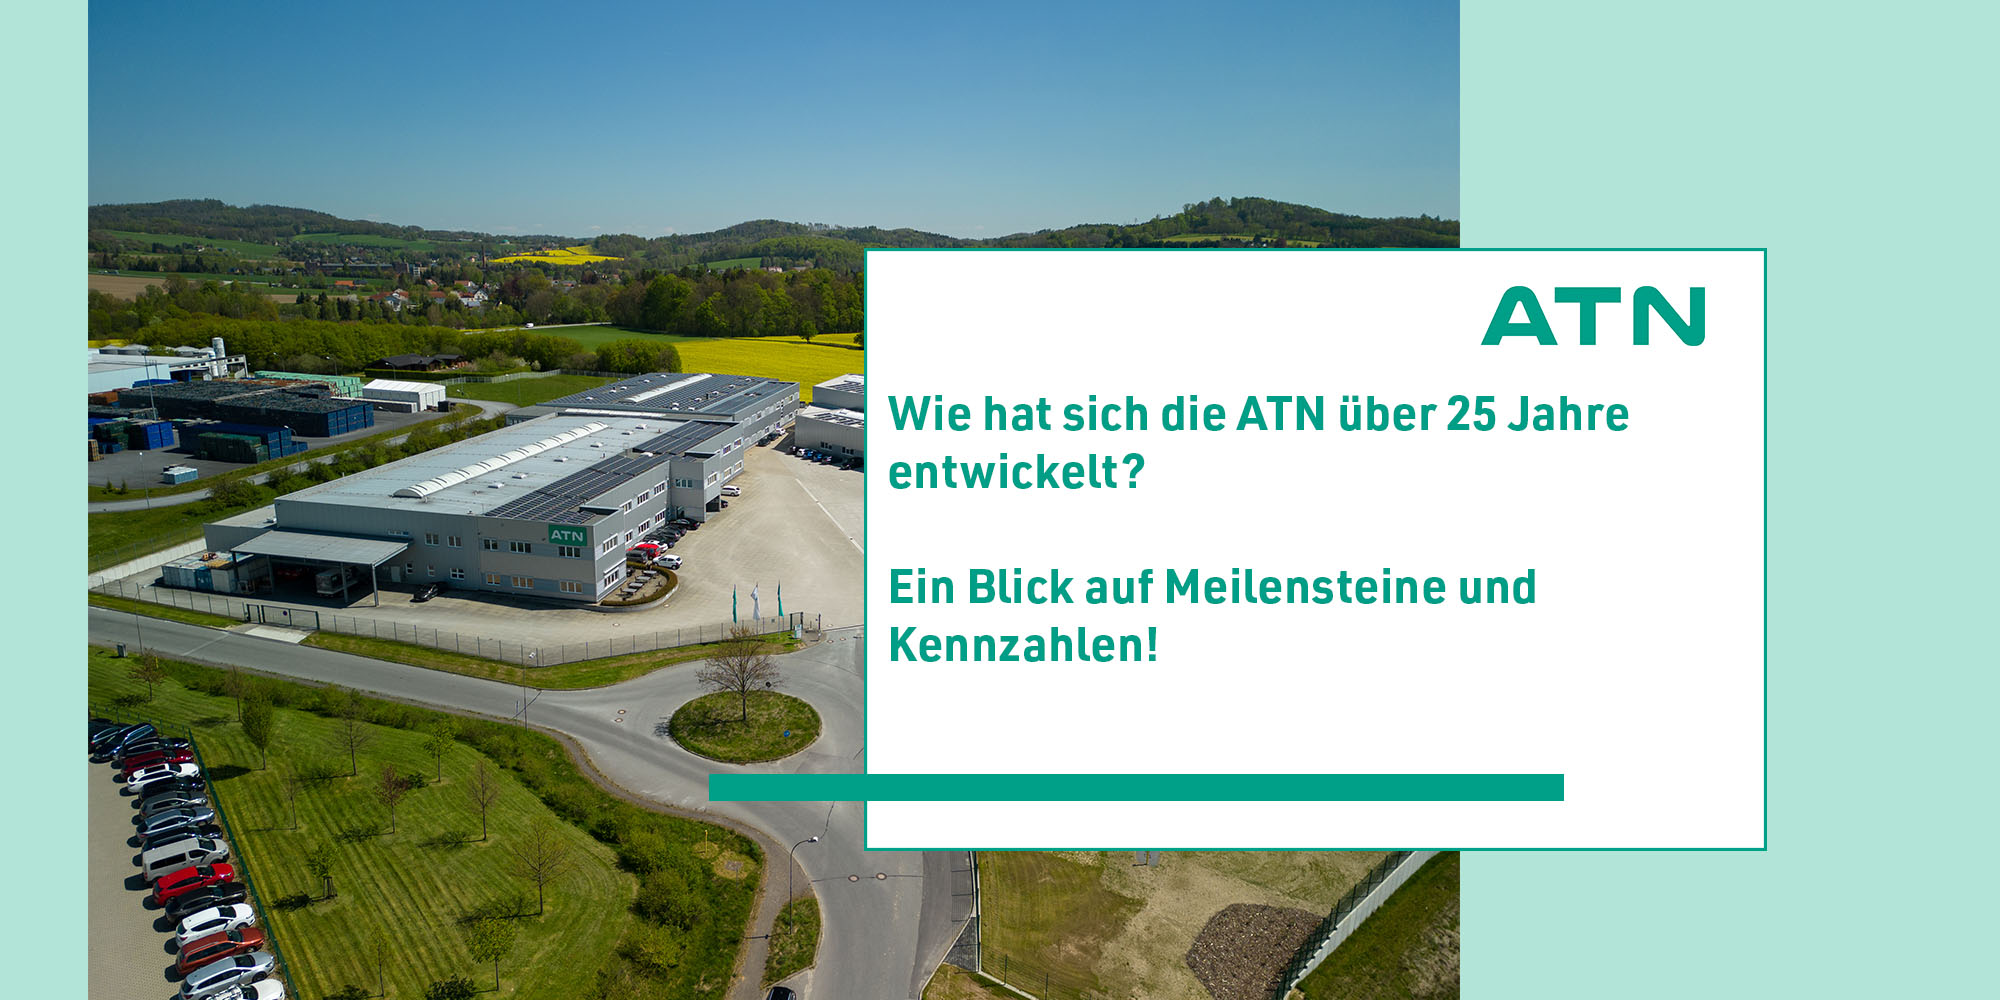 ATN_Homepage_Meilensteine